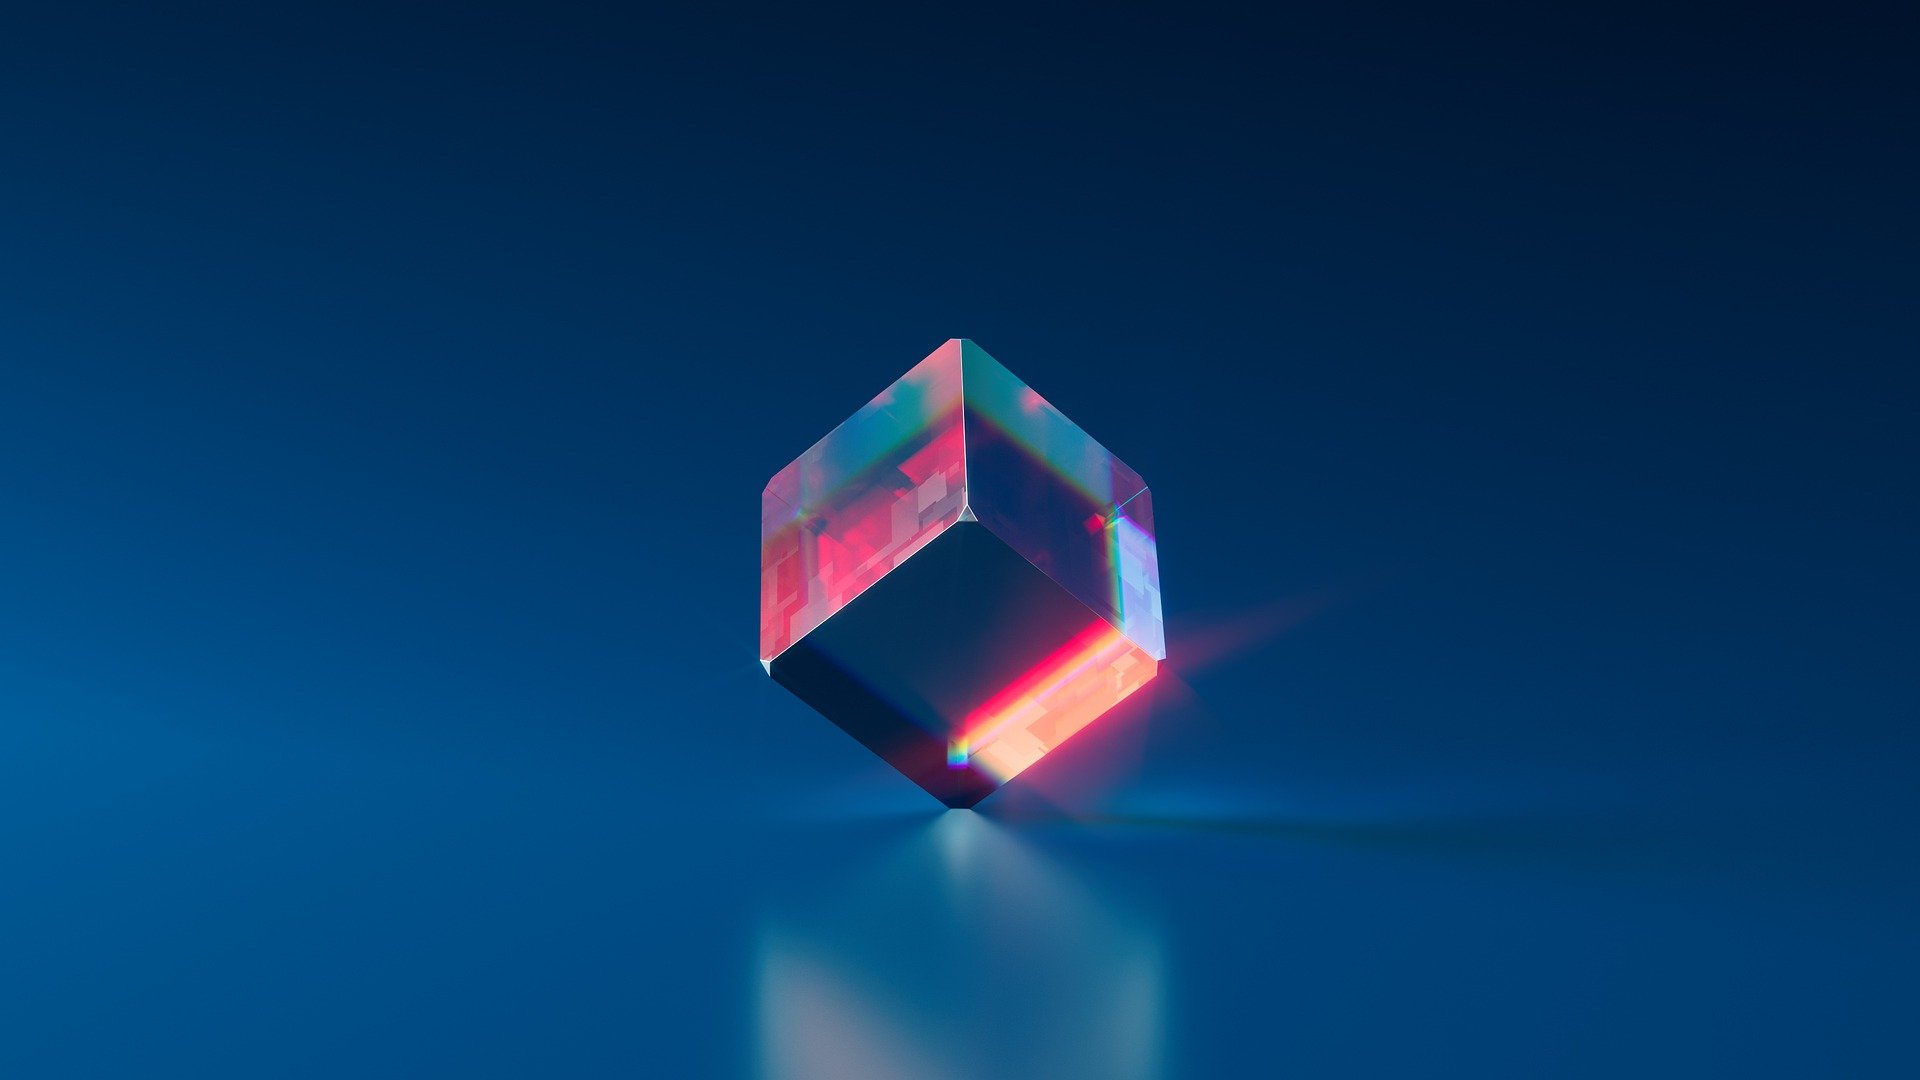 A three-dimensional glass cube